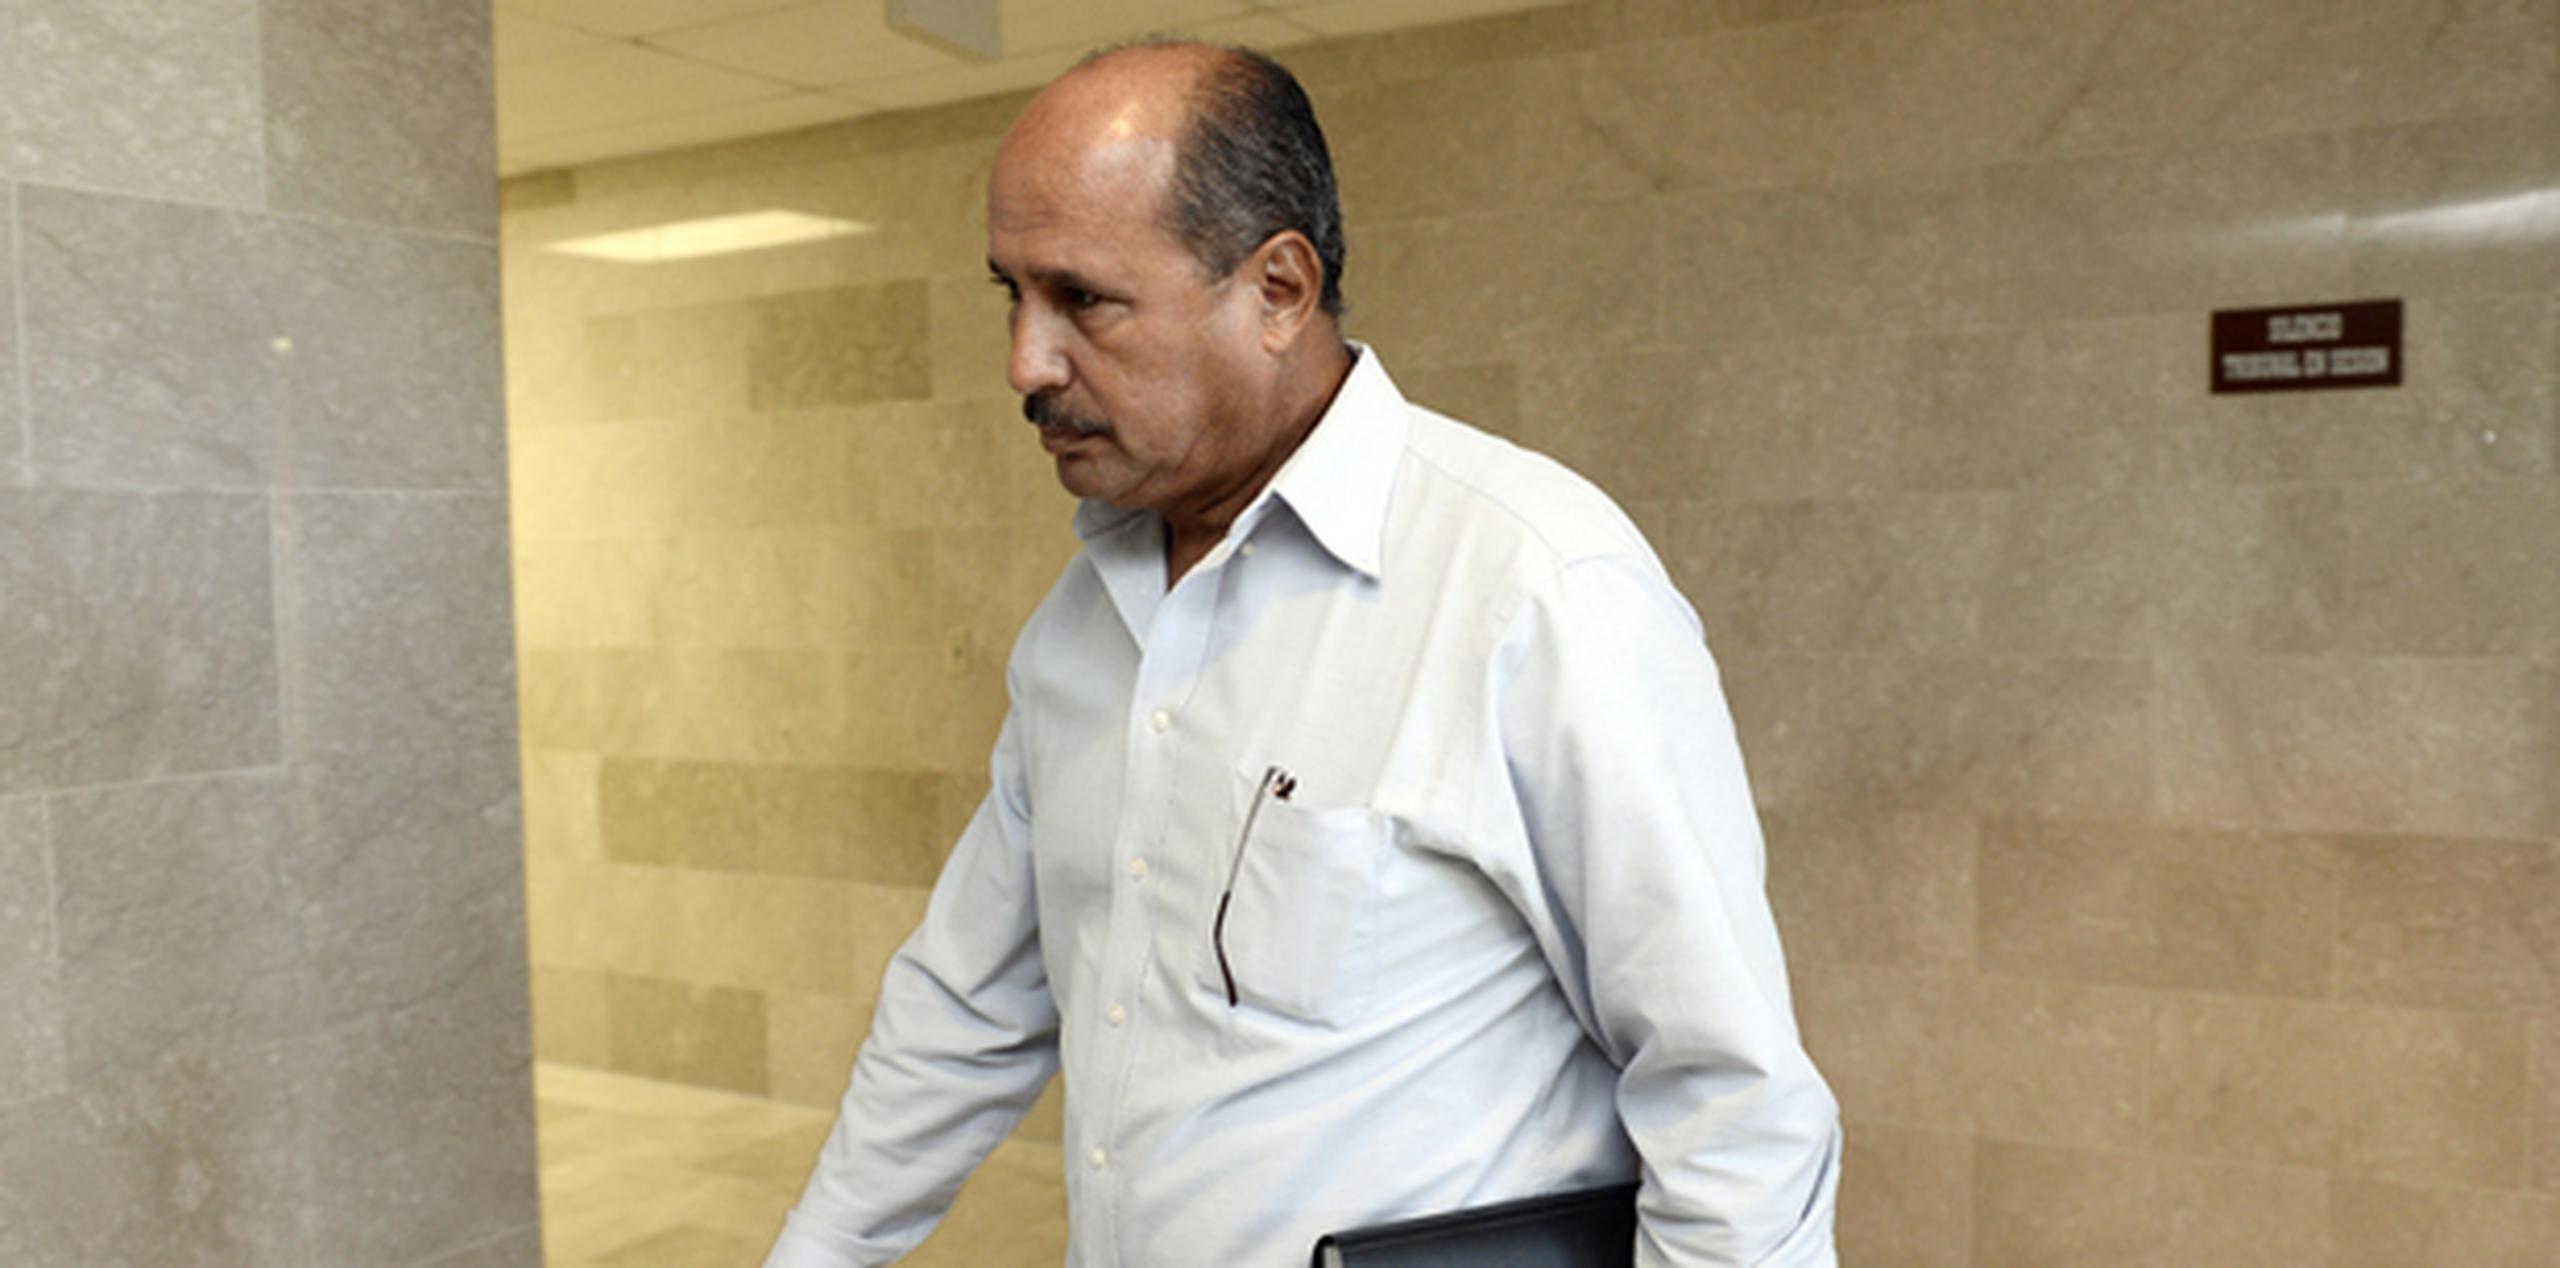 López Burgos, adscrito al distrito policíaco de Ceiba, fue acusado el pasado 17 de diciembre. (gerald.lopez@gfrmedia.com)